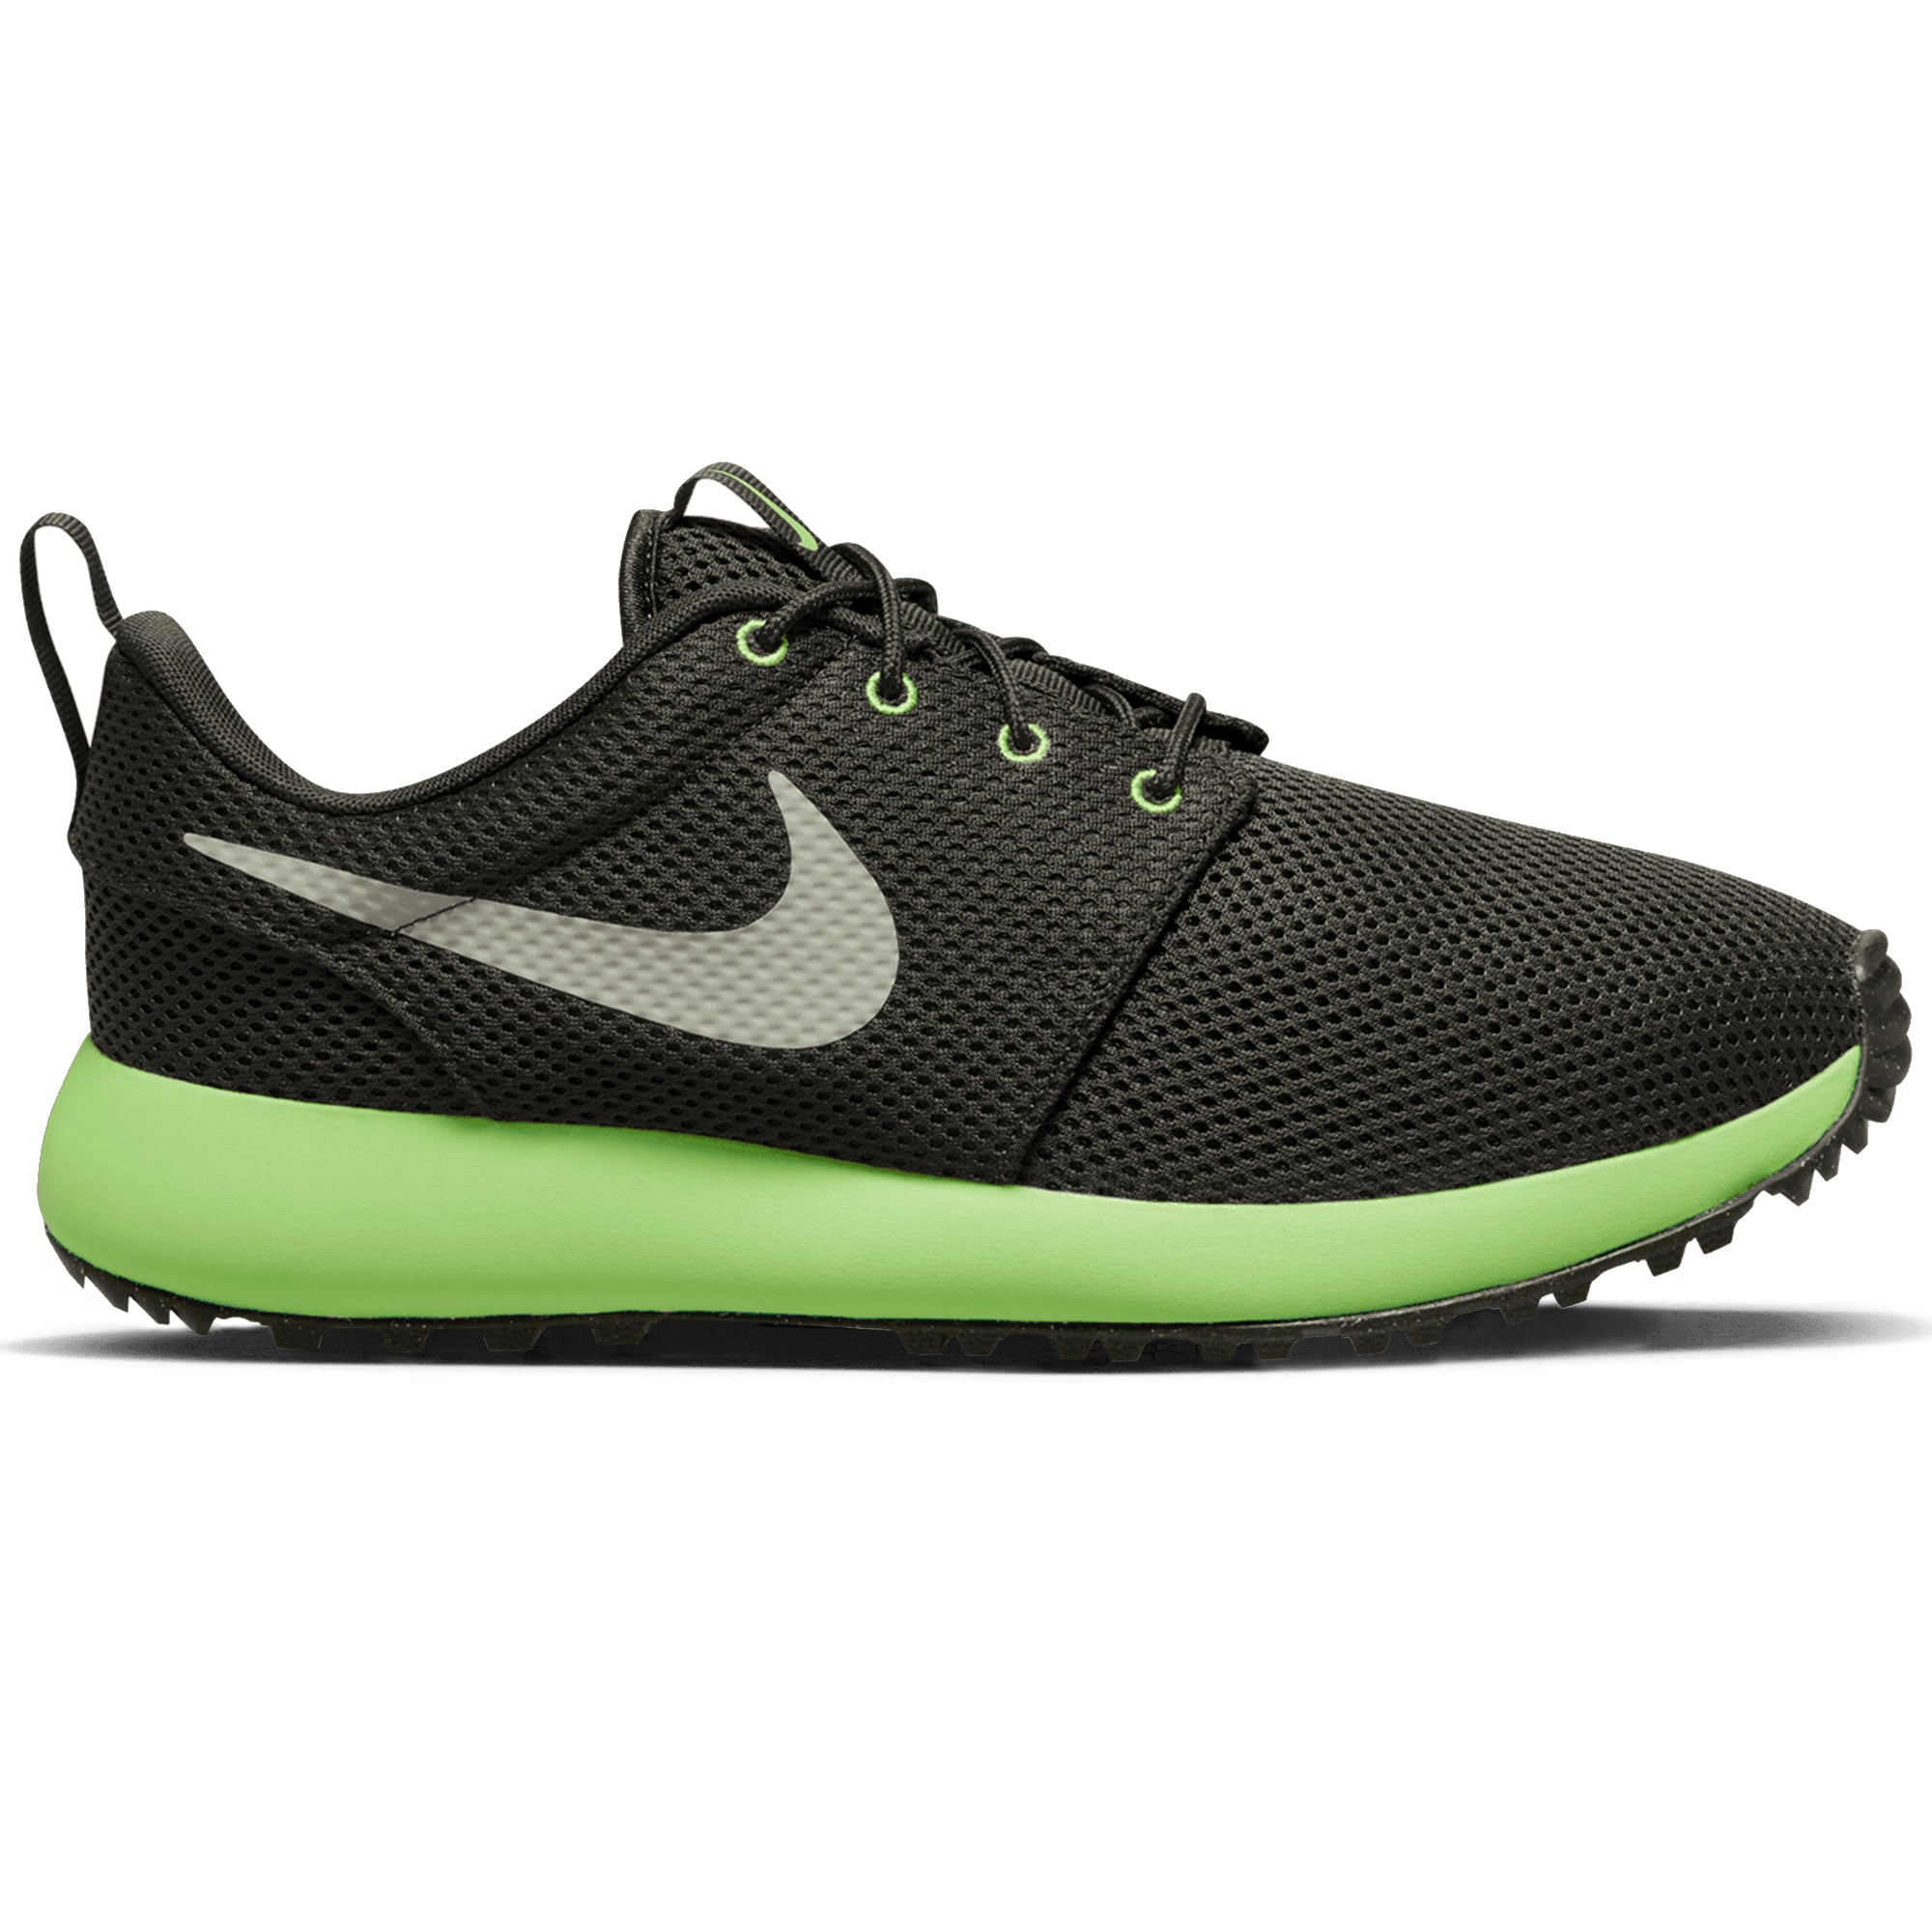 Nike Golf Roshe G 2.0 Shoes